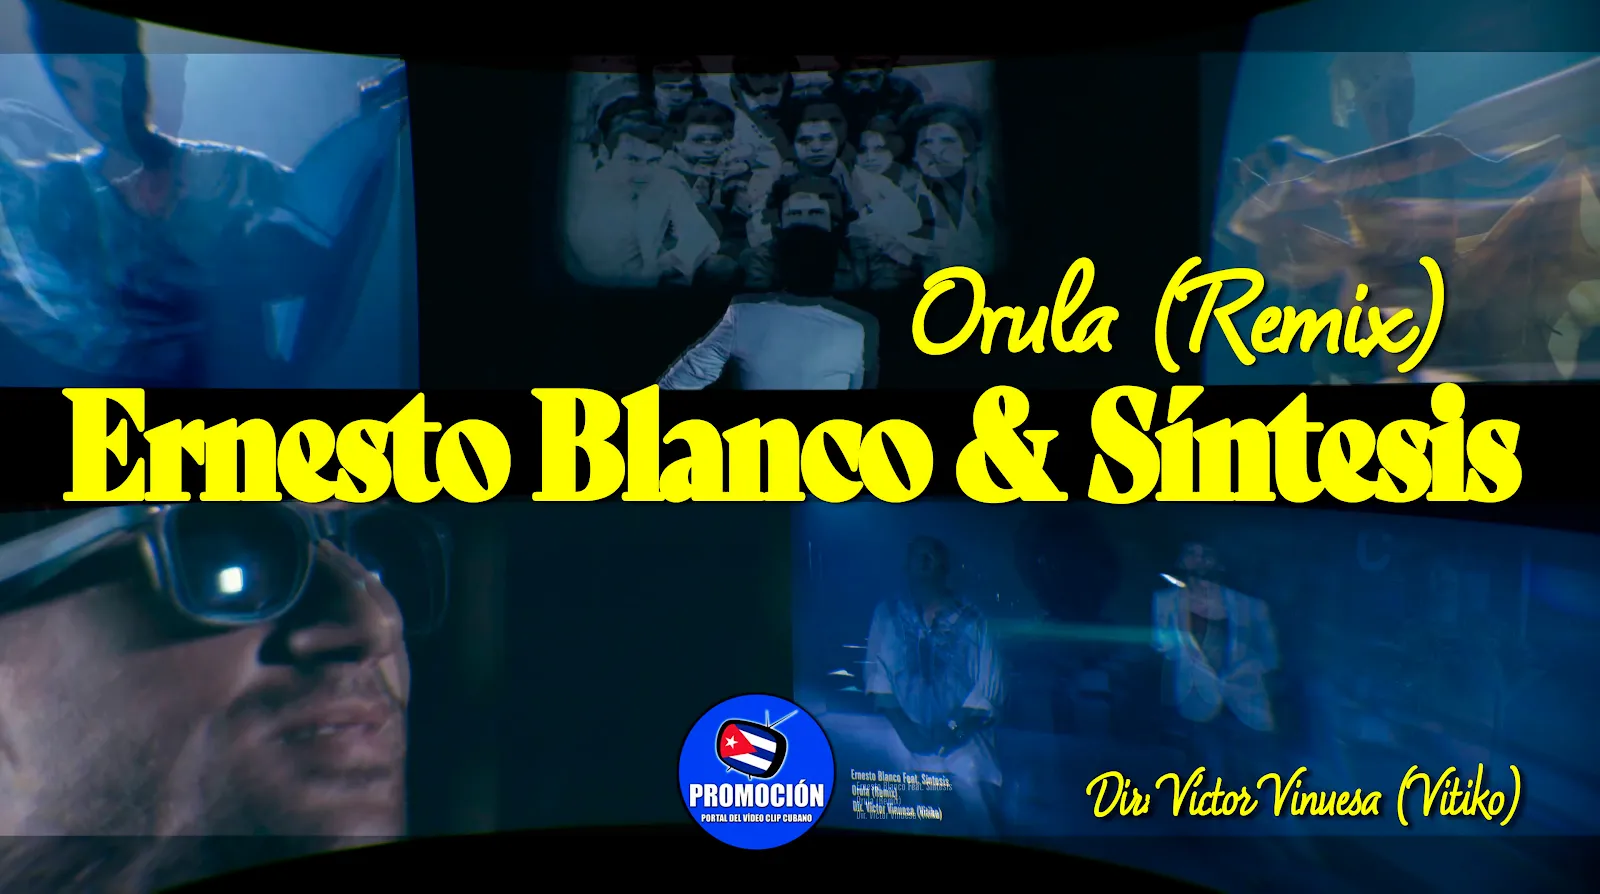 Ernesto Blanco & Síntesis | ¨Orula (Remix)¨ | Director: Vitiko | Portal Video Clip Cubano | Música Cubana | Artistas Cubanos | Canción | CUBA